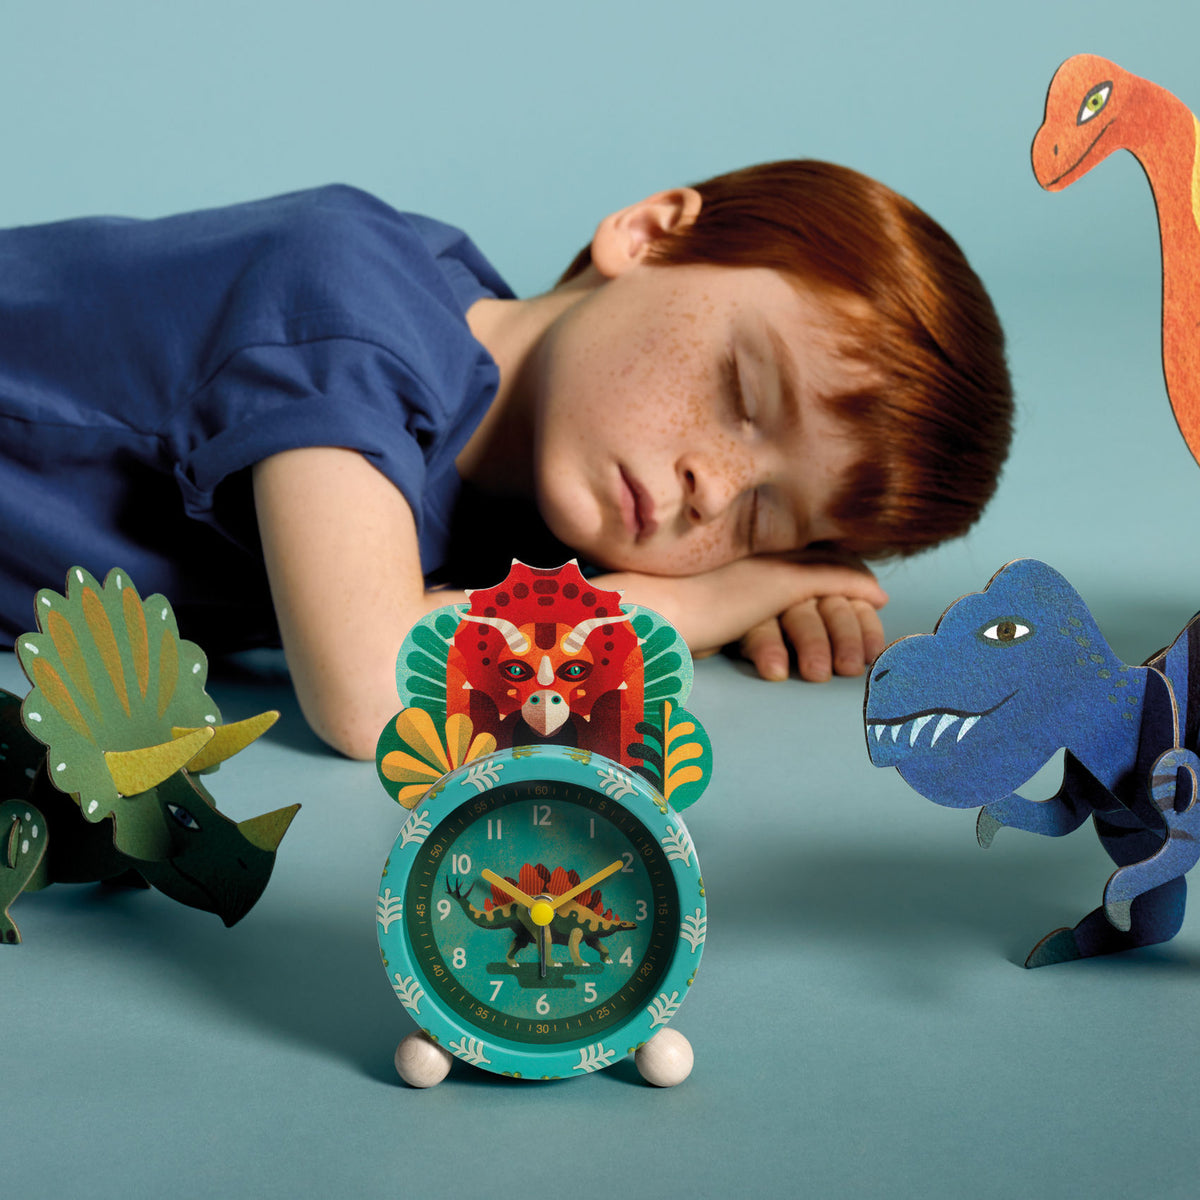 Ein hübsch illustrierter Wecker im Dinosaurier-Thema für ein sanftes Aufwachen und zum Erlernen der Uhrzeit. Die Zeiger zeigen die Stunden, Minuten und Sekunden an und werden von einem geräuschlosen Quarzwerk angetrieben. Dank der Lichttaste kann das Kind die Uhrzeit auch im Dunkeln sehen.